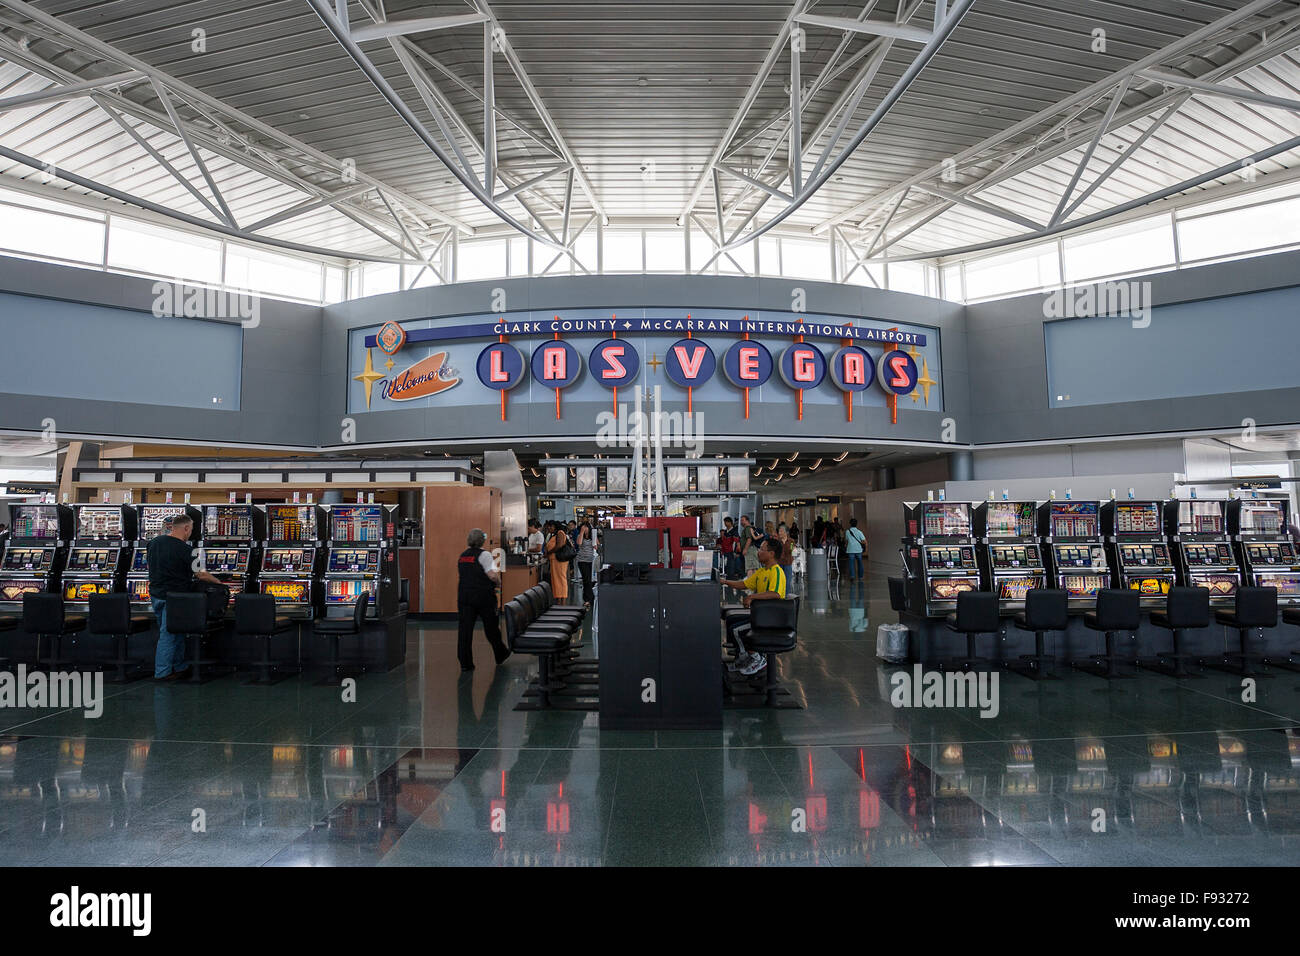 Les jeux de hasard, machines à sous, de l'aéroport de Las Vegas, Las Vegas, Nevada, USA Banque D'Images